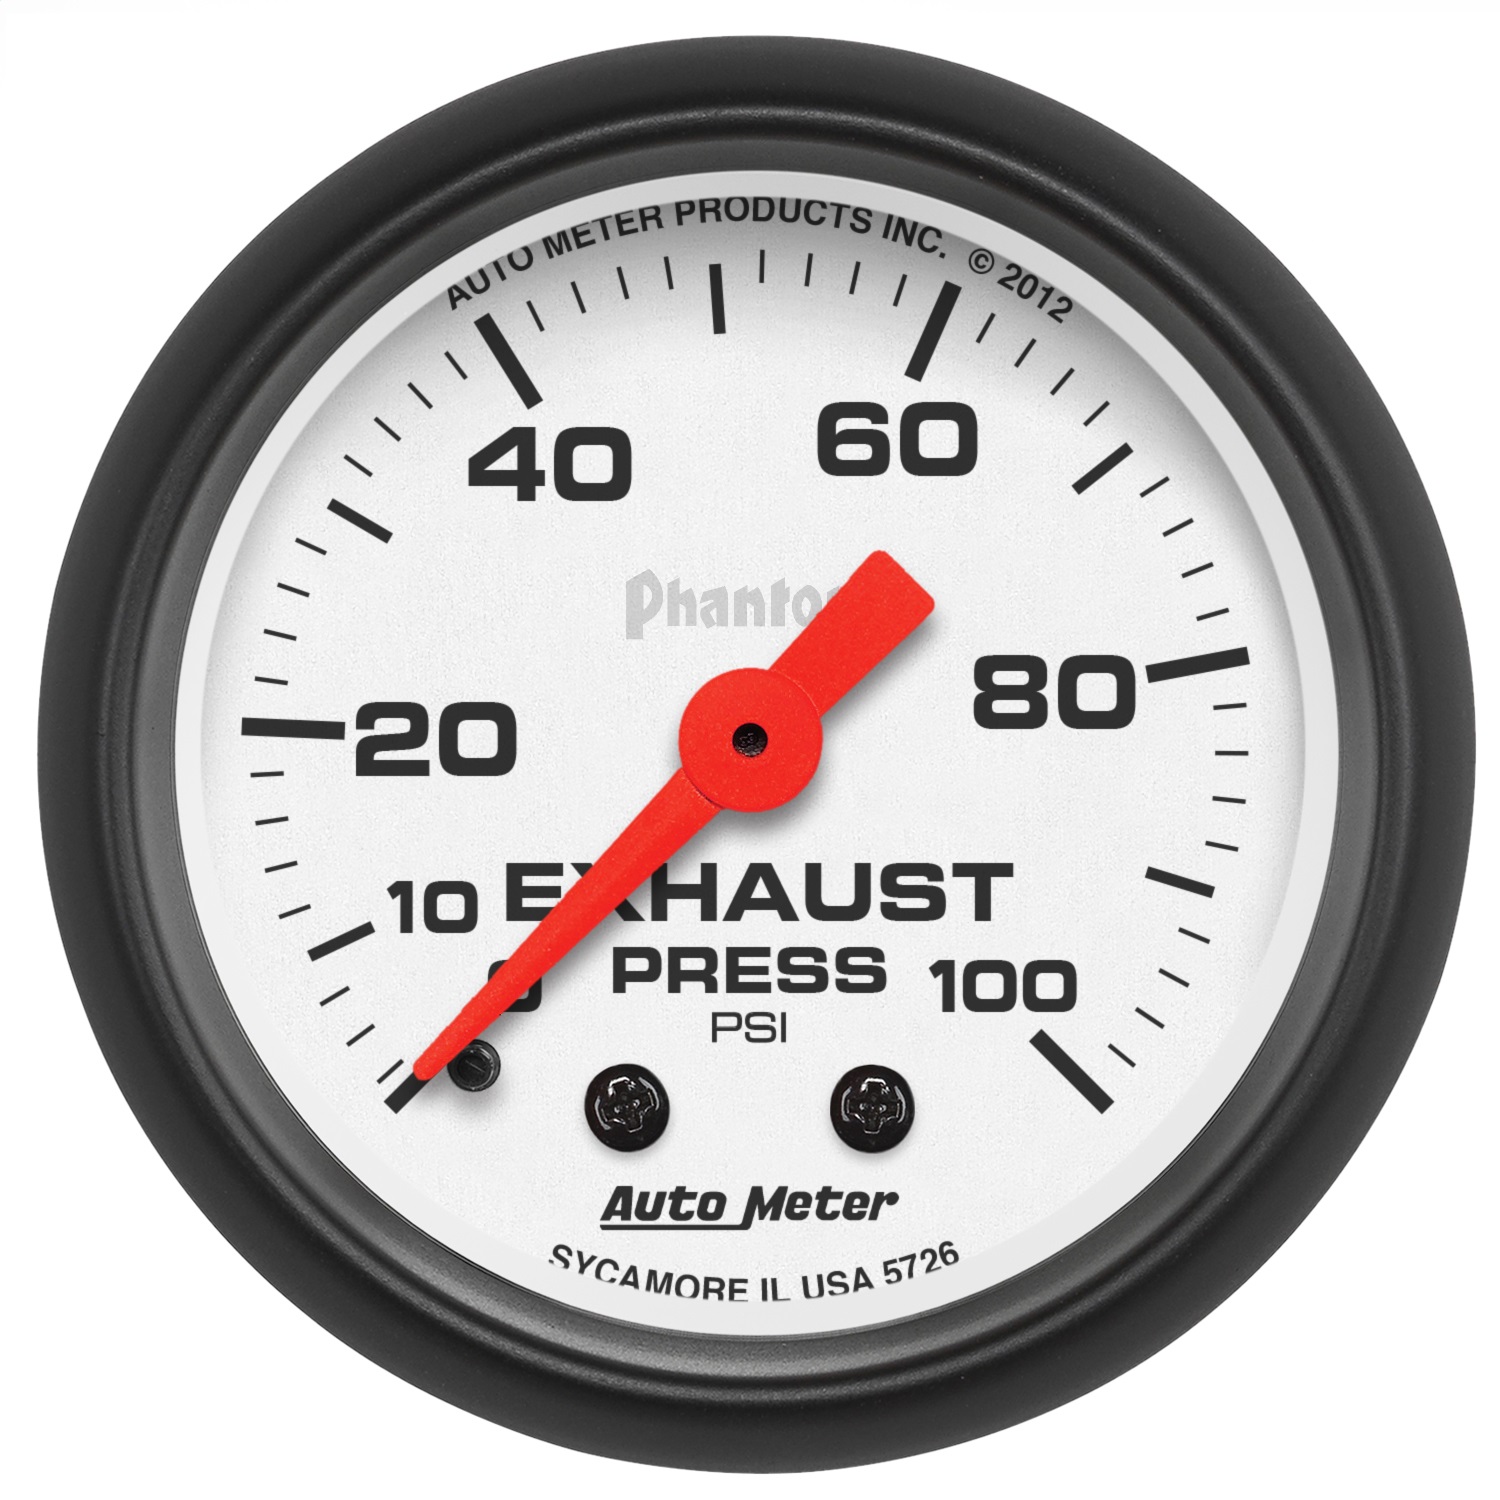 Auto Meter Auto Meter 5726 Phantom Mechanical Exhaust Pressure Gauge